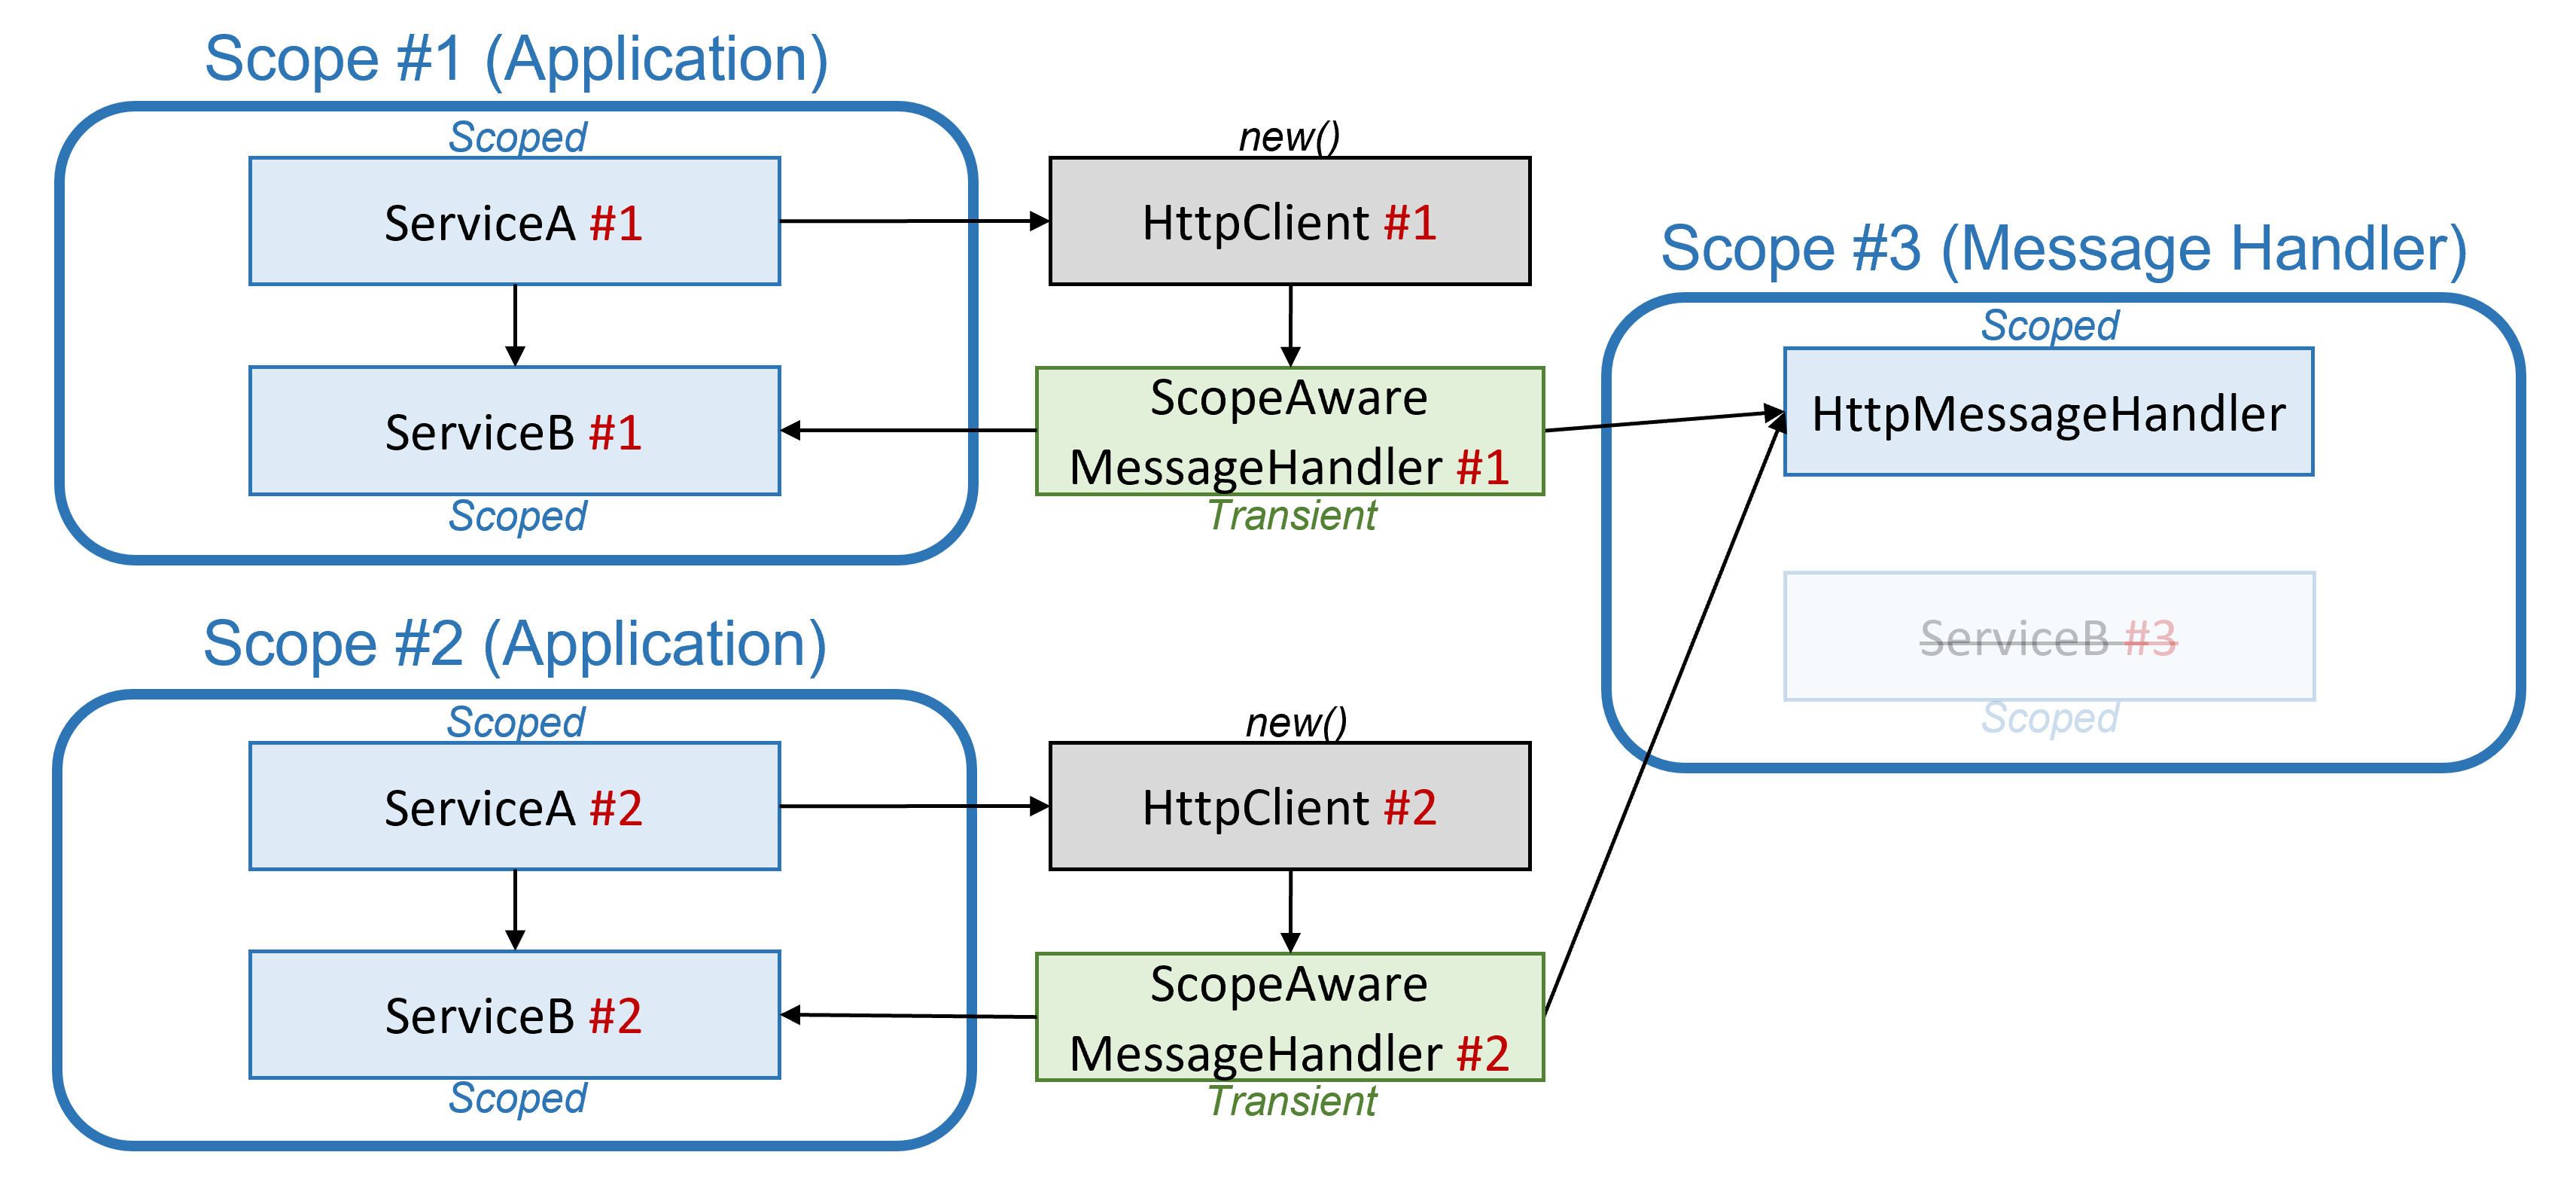 Схема получения доступа к область приложениям через отдельный обработчик временных сообщений и IHttpMessageHandlerFactory